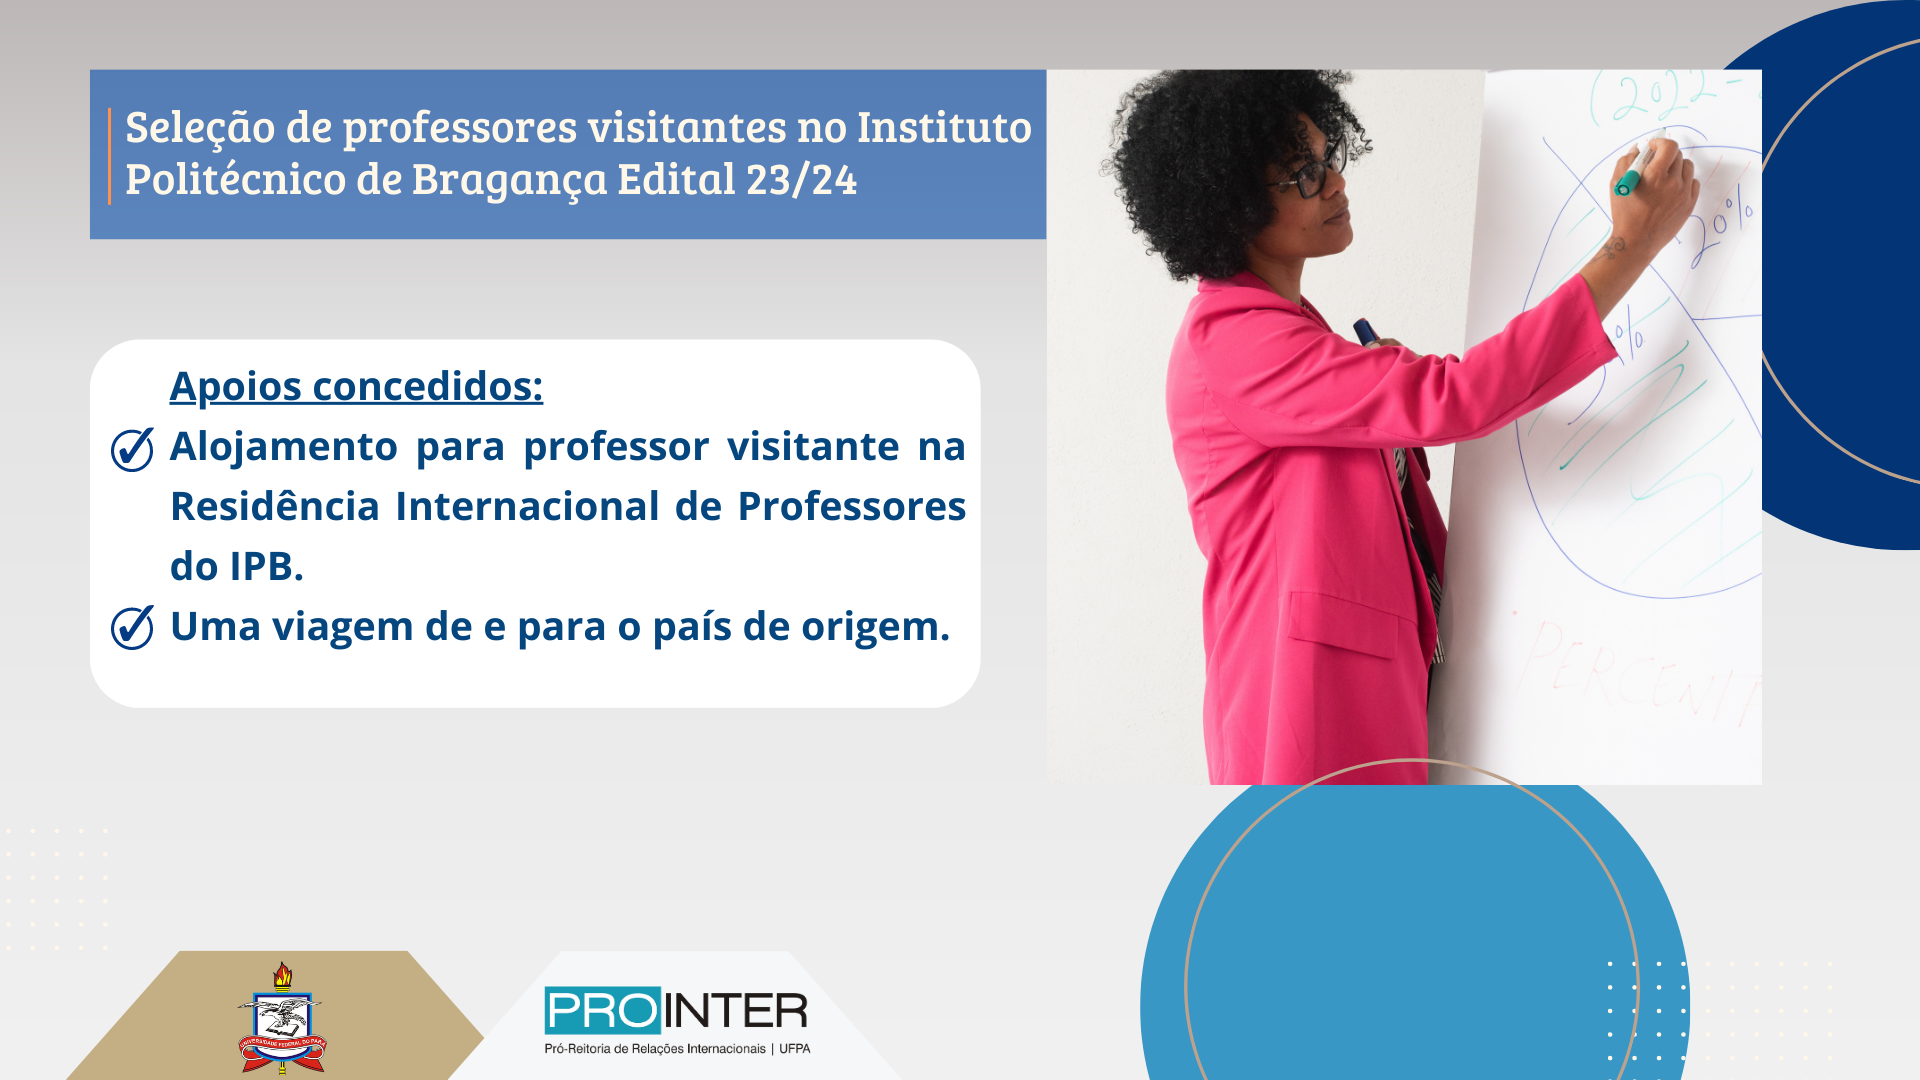 Programa de recepção de professores visitantes no Instituto Politécnico de Bragança - Edital 23/24